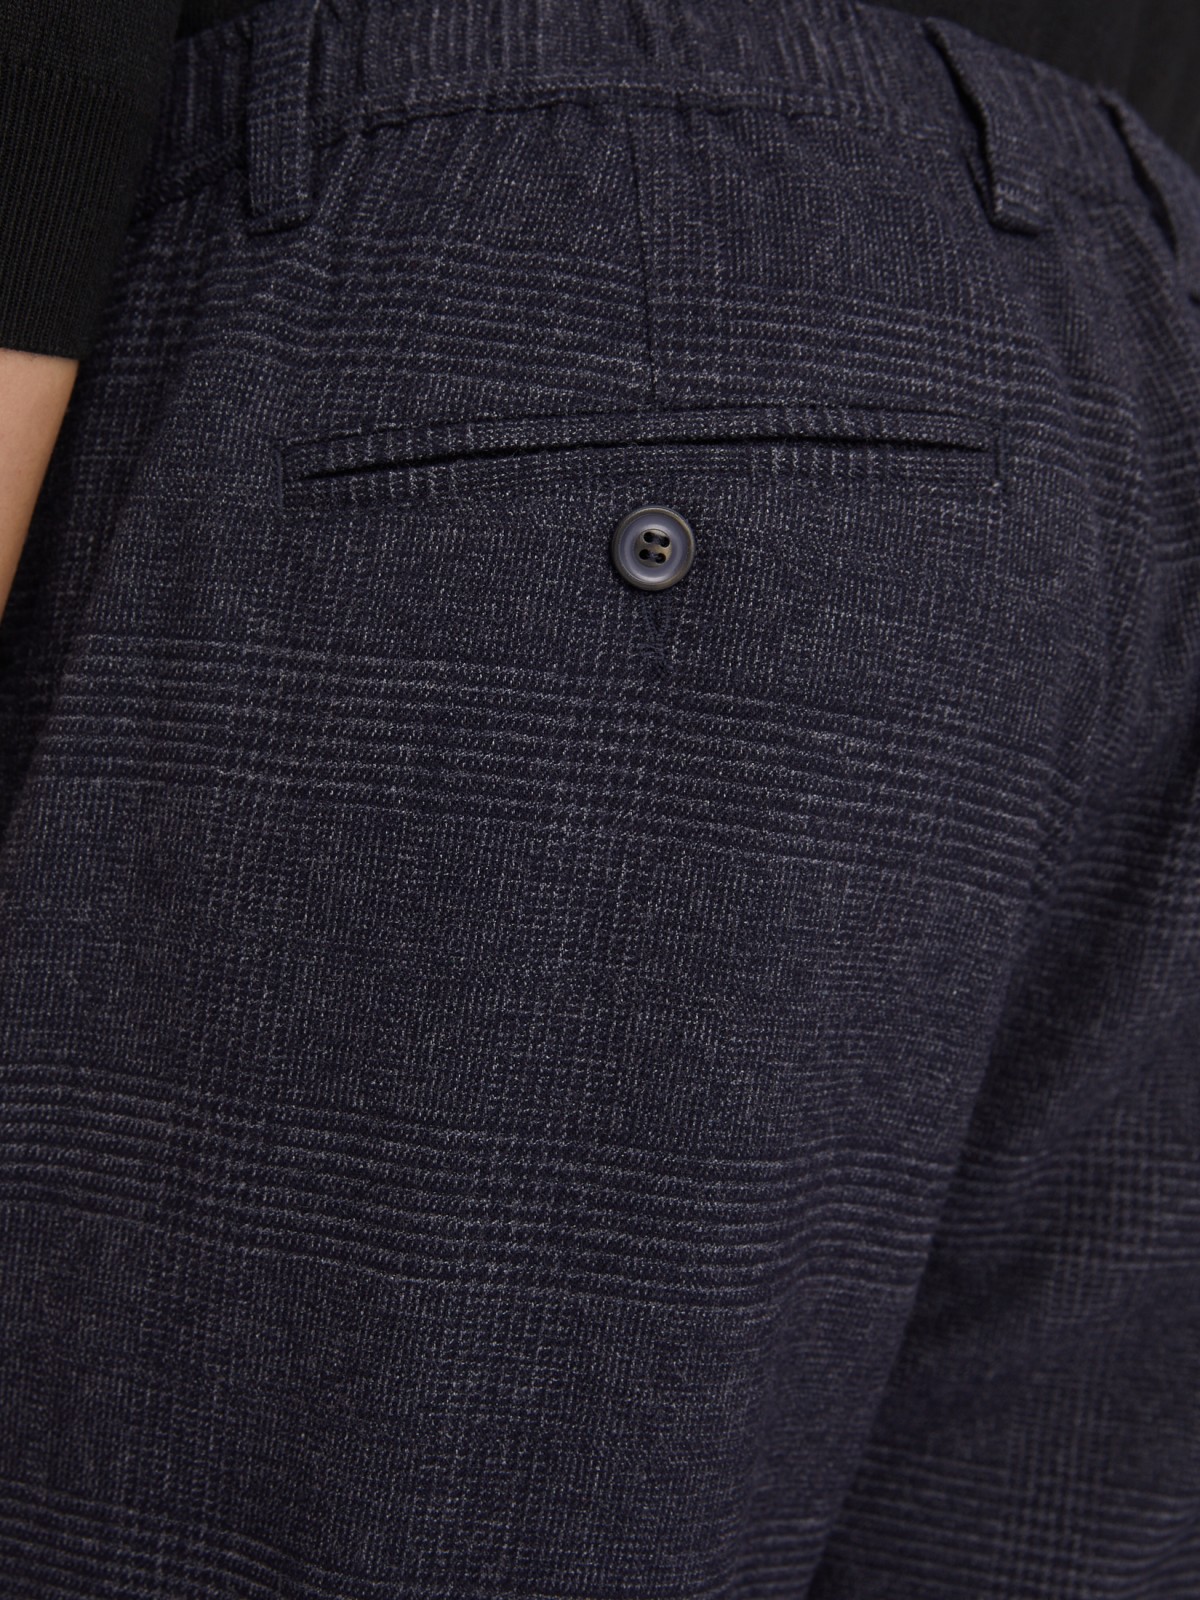 Офисные брюки силуэта Tapered с узором в клетку и поясом на резинке zolla 013347366041, цвет синий, размер 30 - фото 6